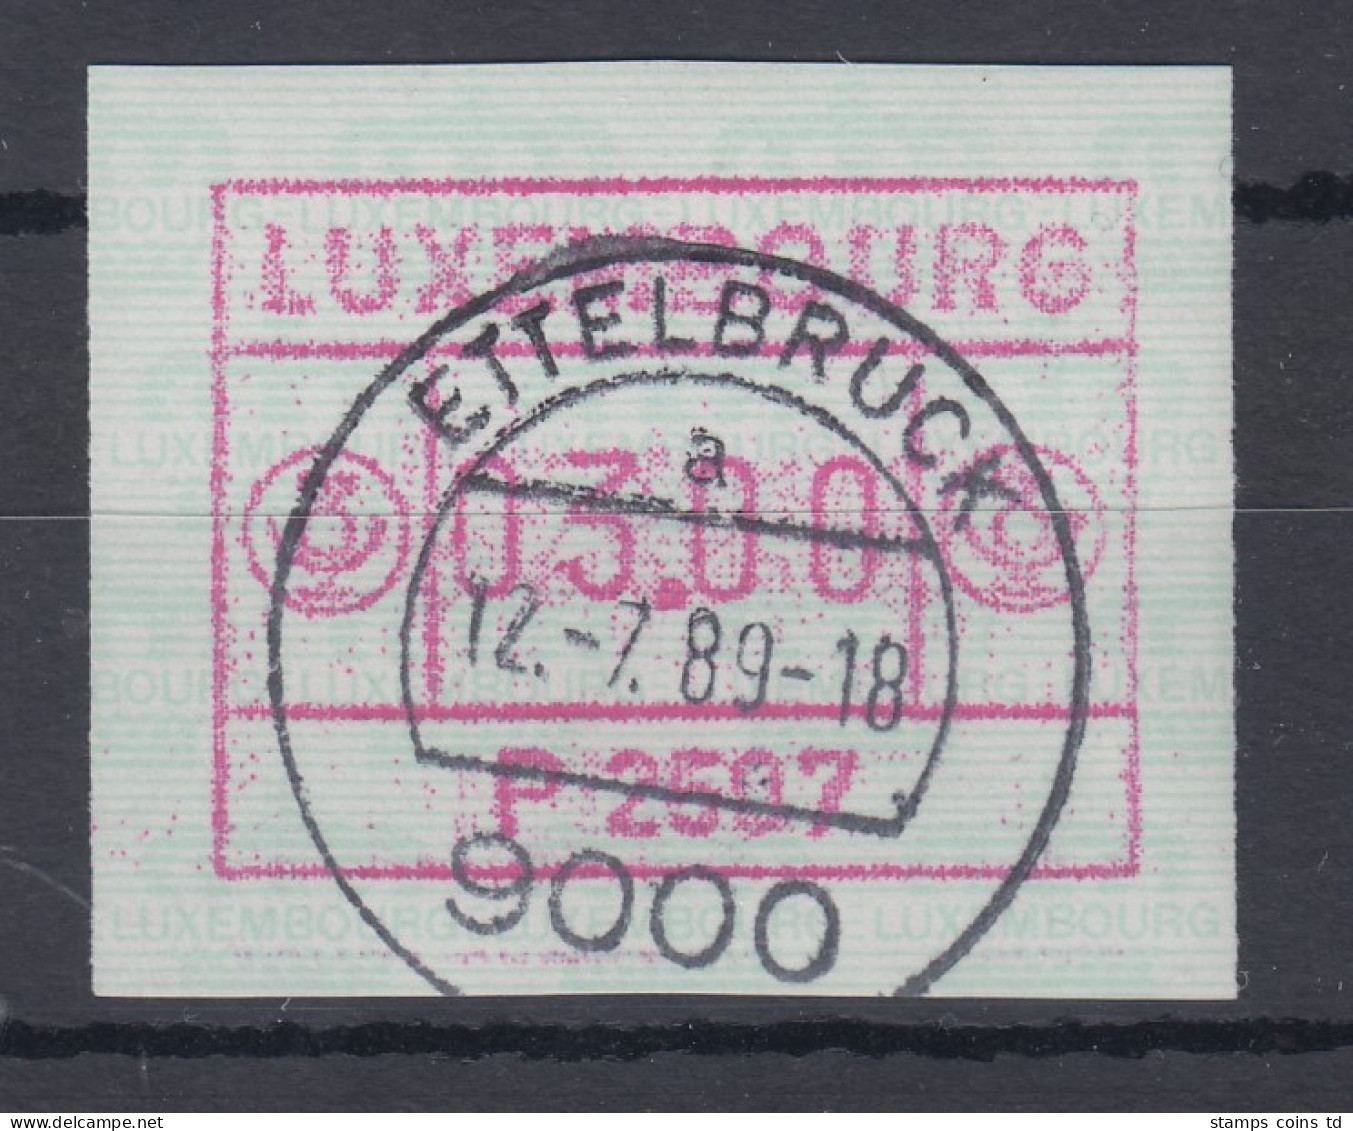 Luxemburg ATM P2507 Wert 03.00 Mit Voll-O ETTELBRUCK 12.7.89 - Automatenmarken